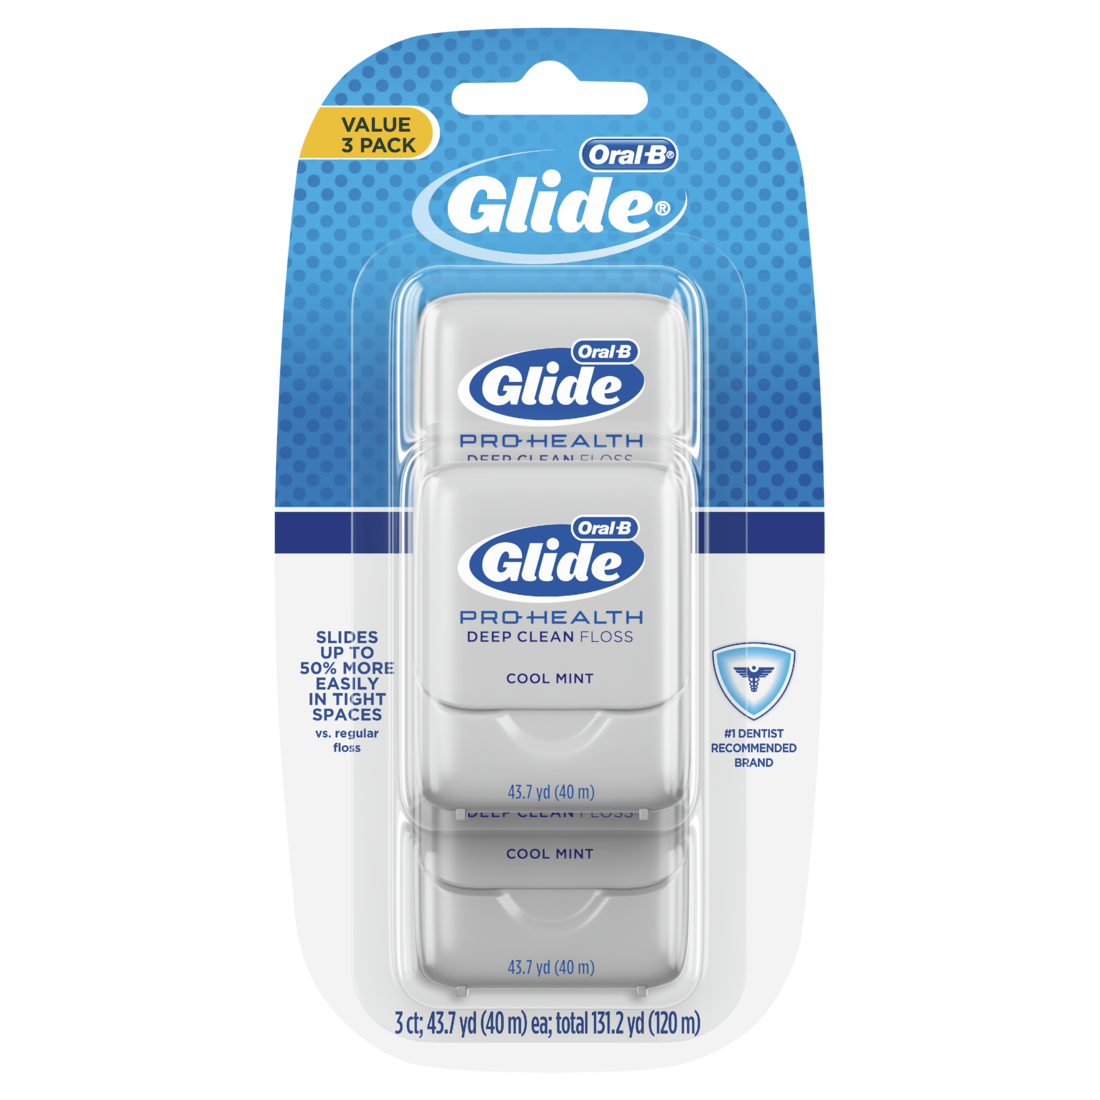 Oral-B Glide Pro-Health Deep Clean Cool Mint Dental Floss, Value 3 Pack - 40m each x 3/16pk